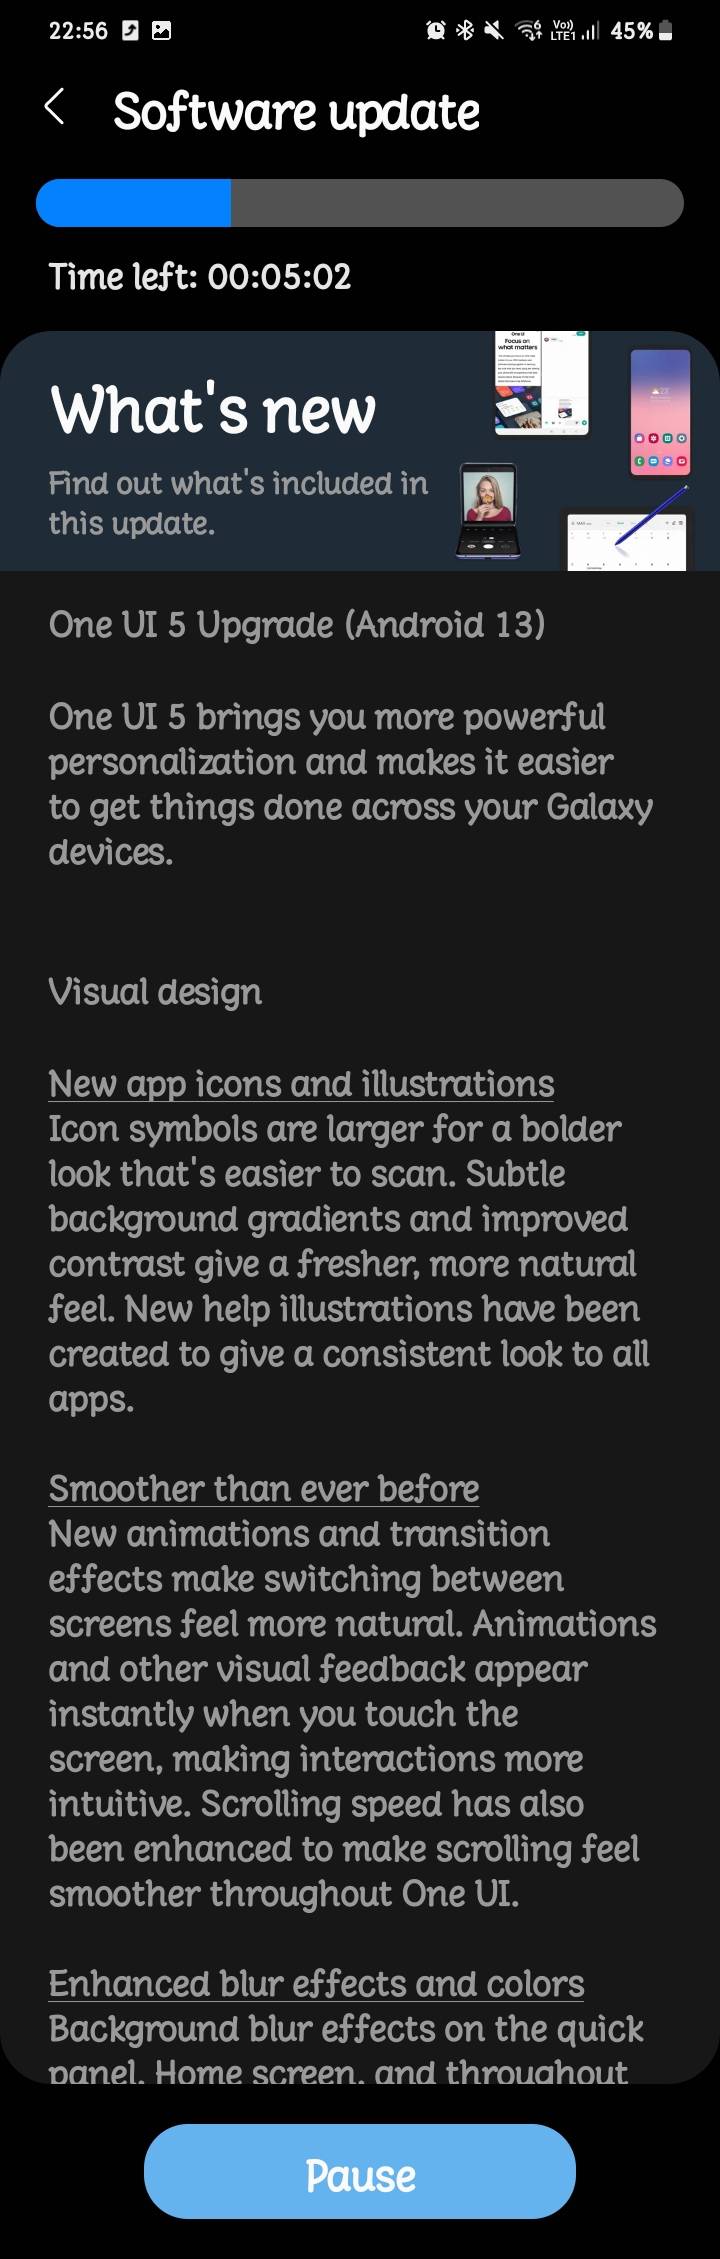 Bộ hình nền Galaxy S20 cho iPhone sẽ đem lại cho bạn những bức ảnh nền độc đáo và tuyệt đẹp, giúp bạn thể hiện cá tính và phong cách riêng của mình.